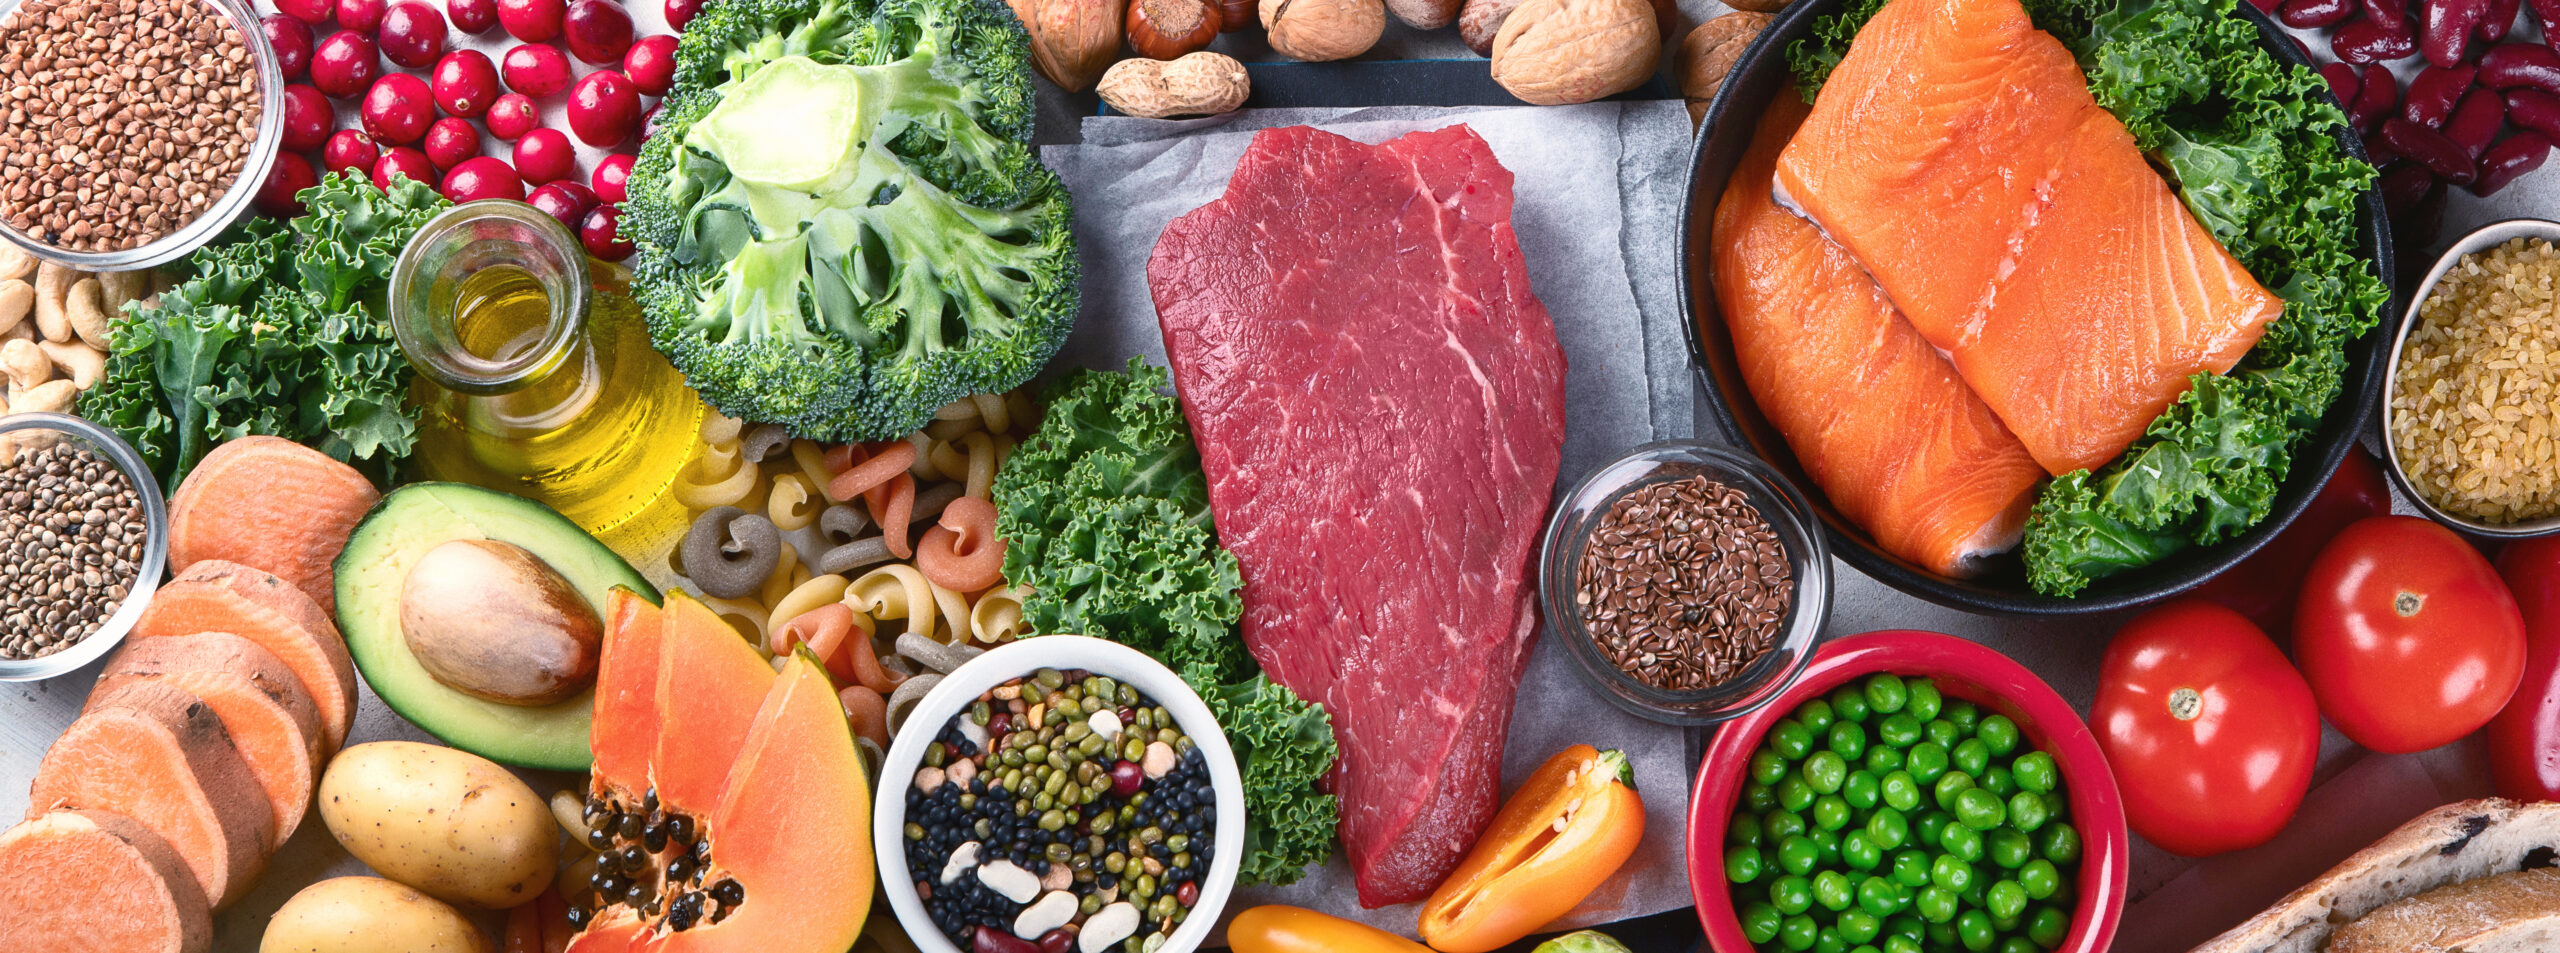 Esiste un ordine a tavola per mangiare verdure, carboidrati e proteine? Ecco cosa dice la scienza